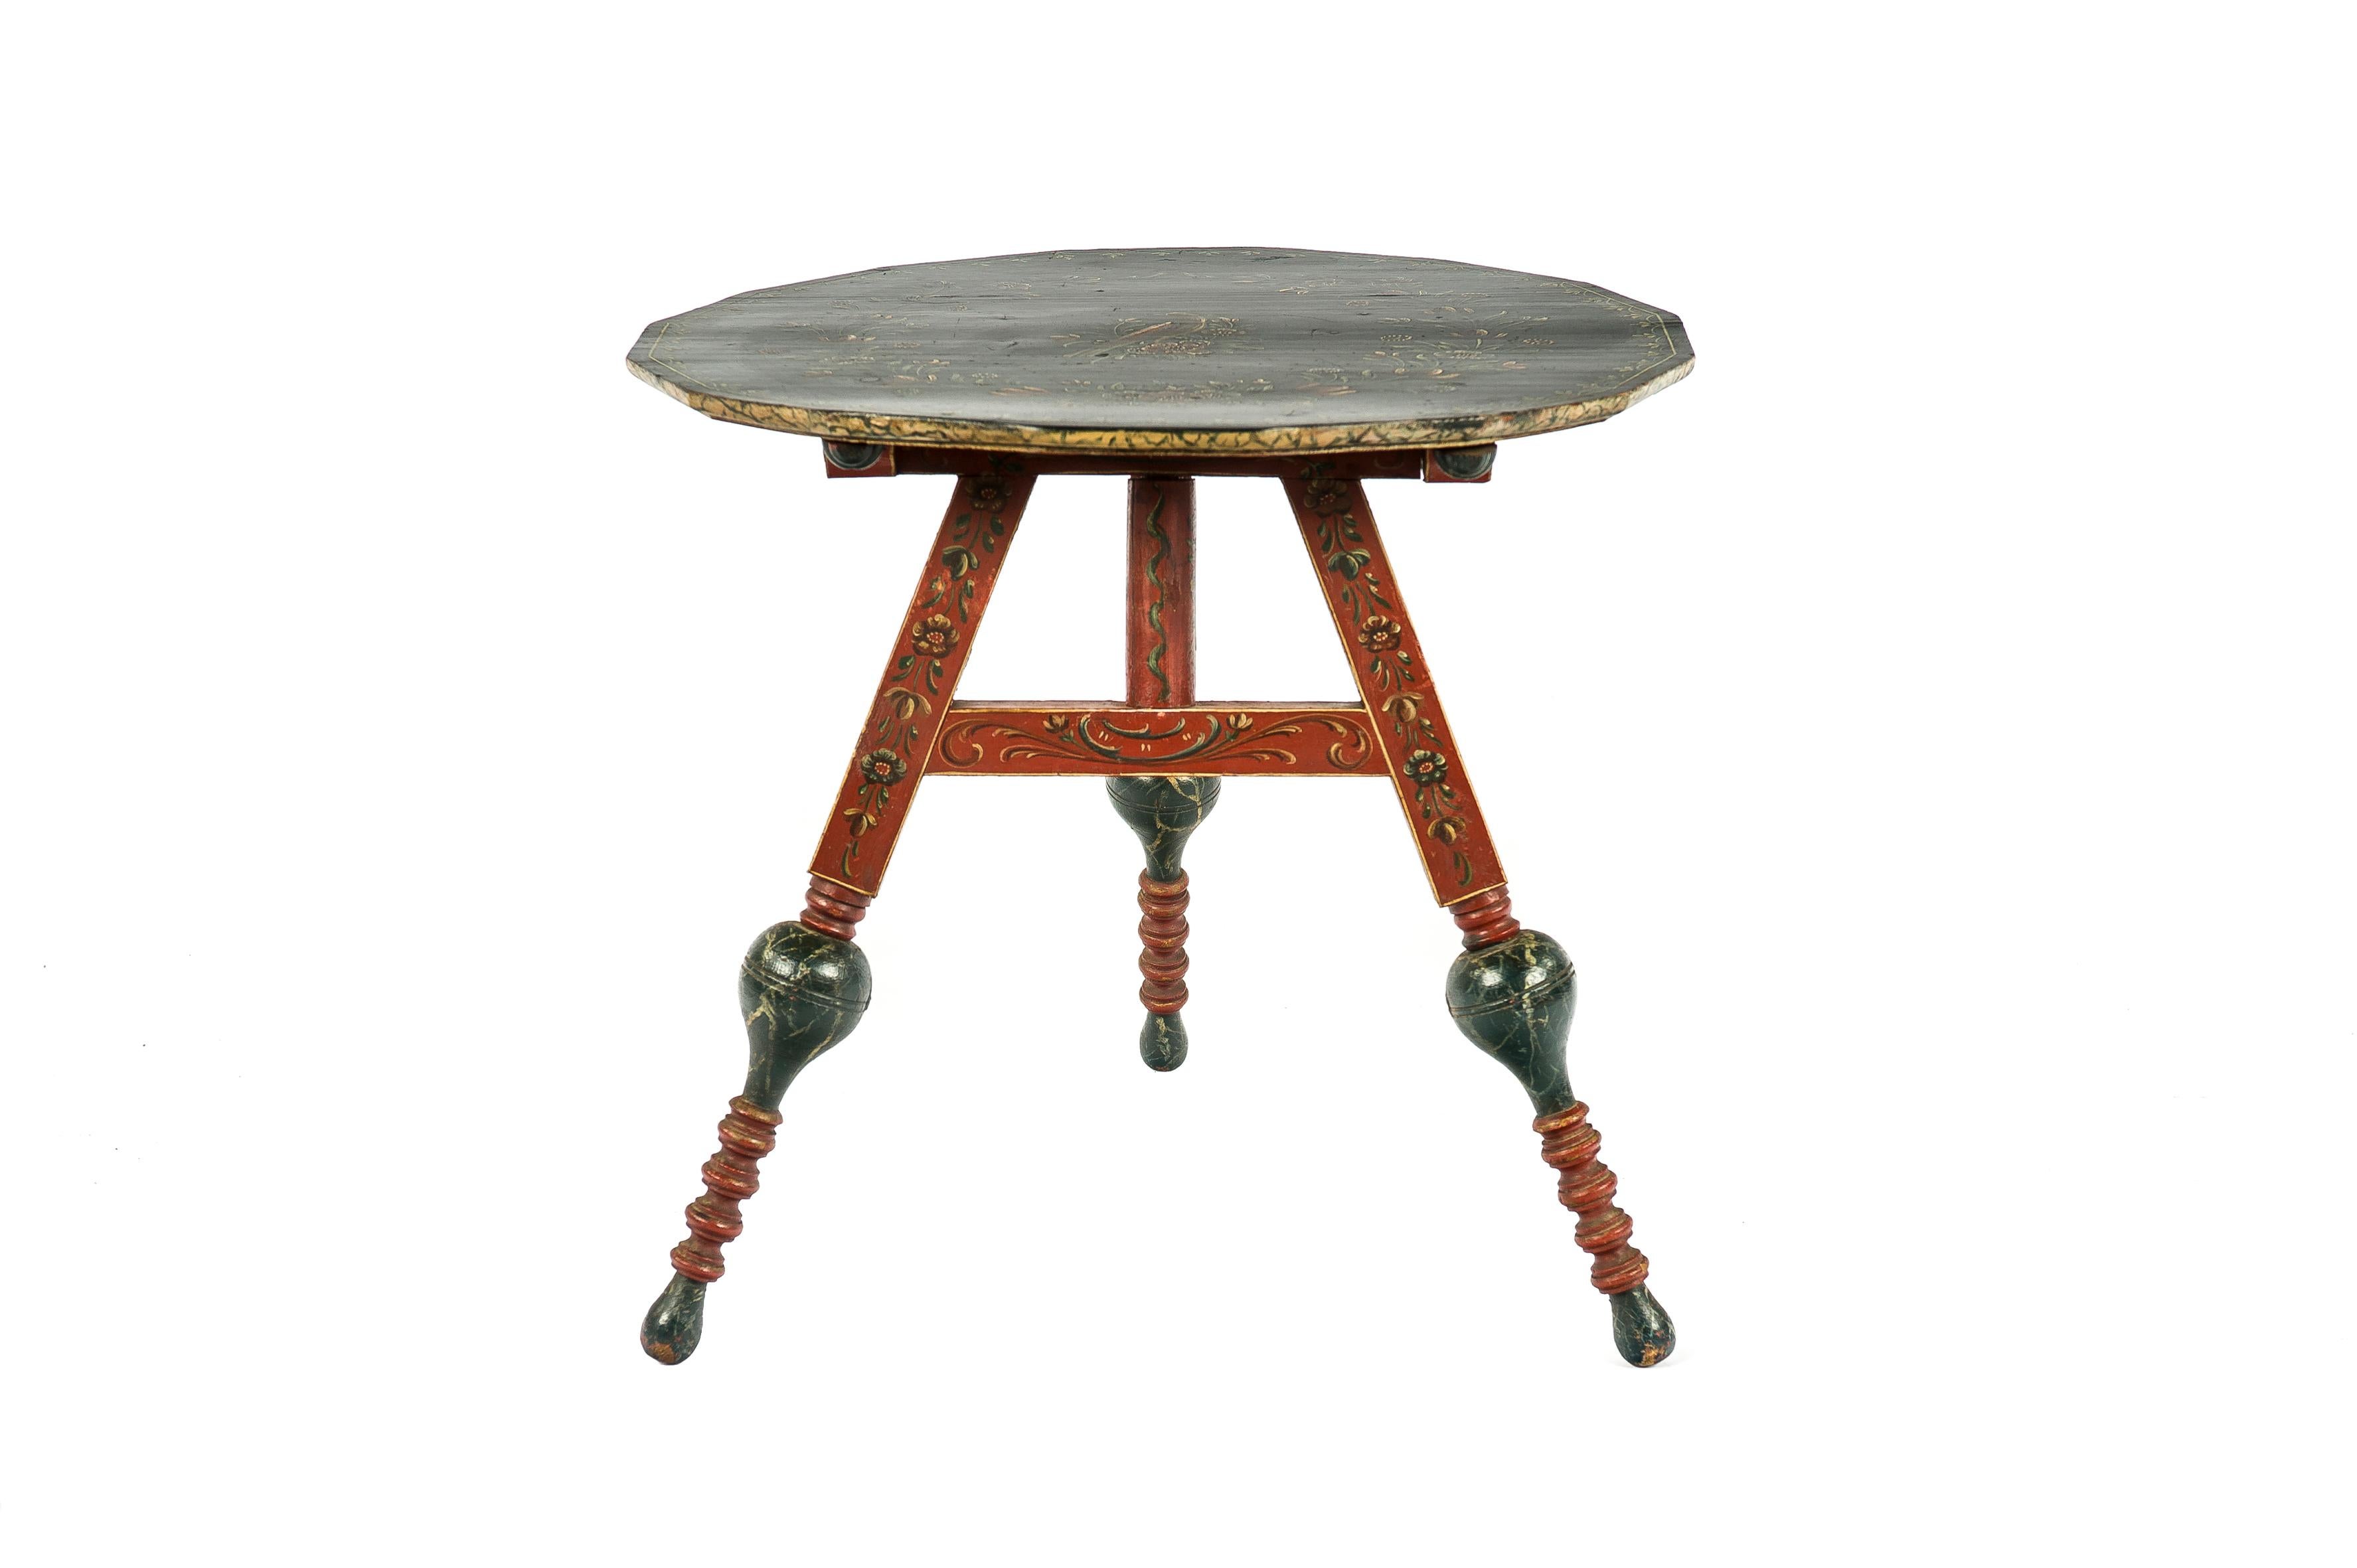 Une belle table antique à plateau basculant qui a été fabriquée dans le nord des Pays-Bas, plus précisément à Hindeloopen à la fin des années 1800. La table est fabriquée en pin massif et est entièrement décorée. Aux Pays-Bas, les tables sont